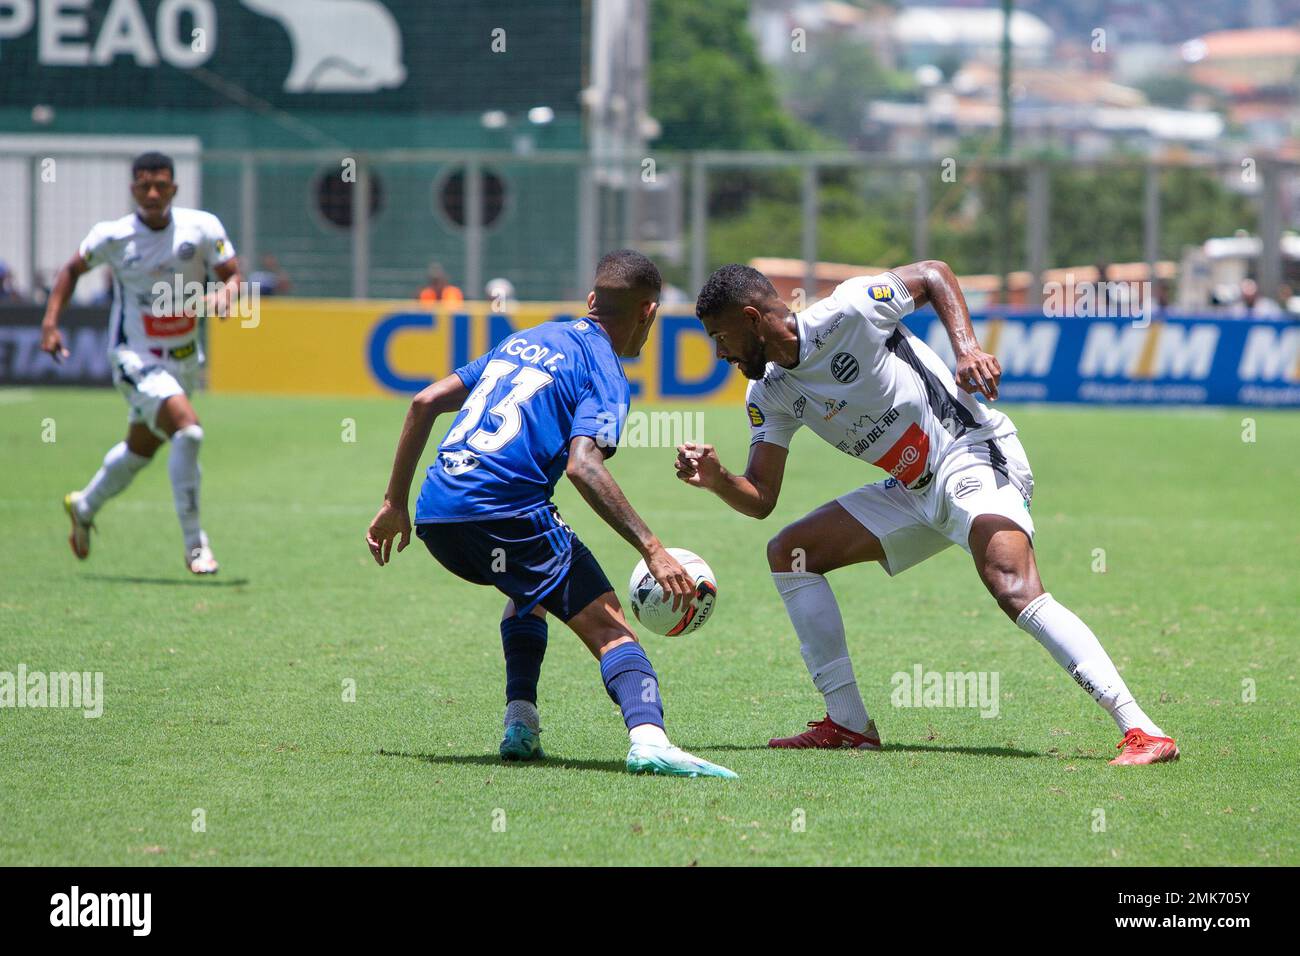 MGS, Cruzeiro Esporte Clube, First Touch Soccer, Copa Libertadores